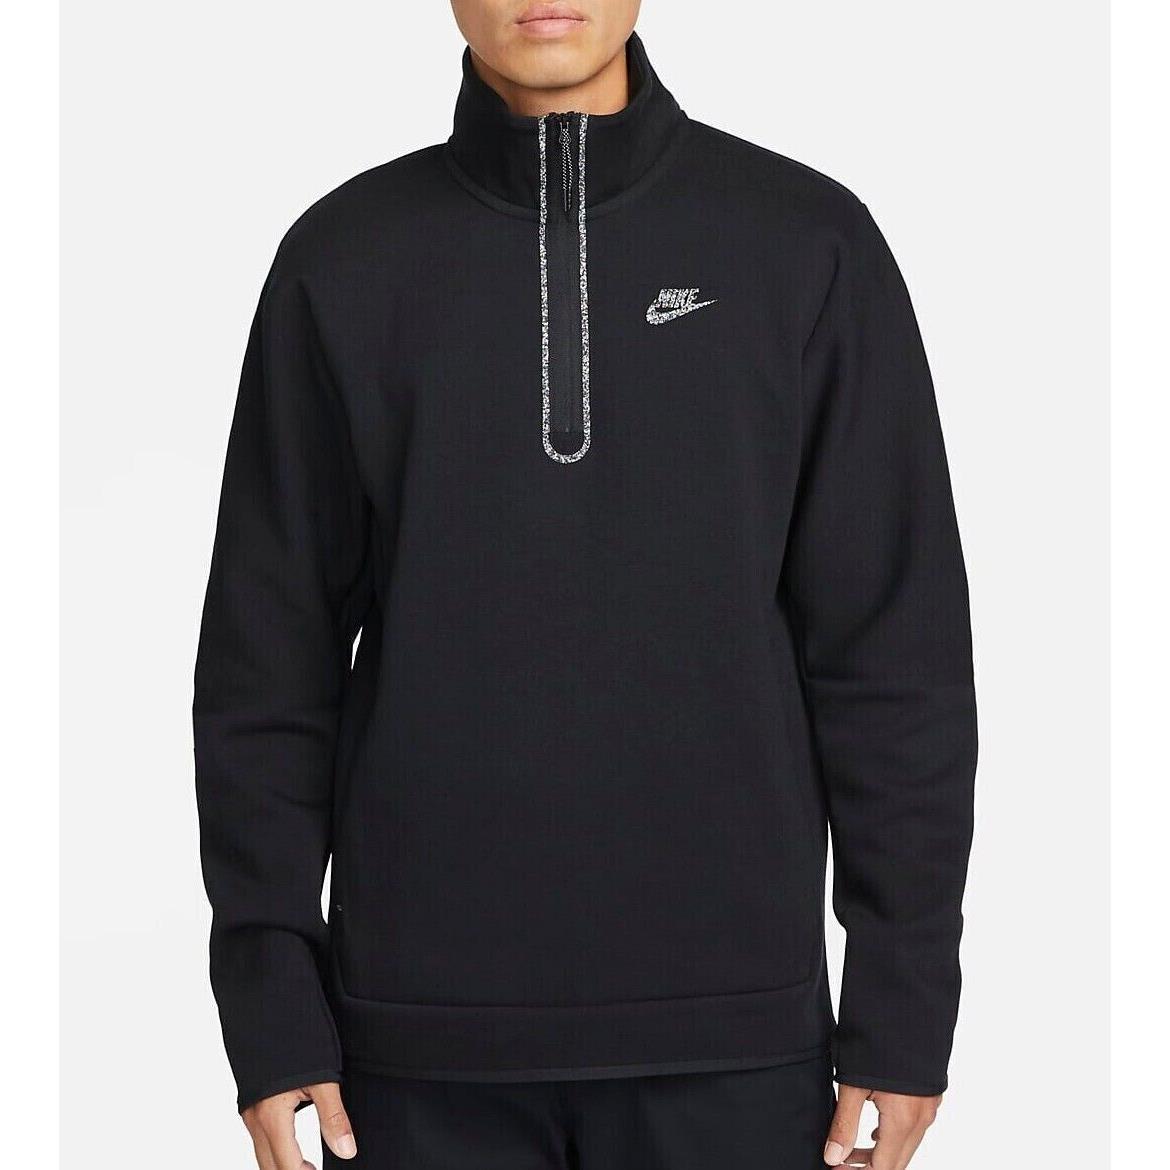 Nike Tech Fleece 1/2 Zip Pullover Top Sweatshirt Jacket DQ4314 Black Large